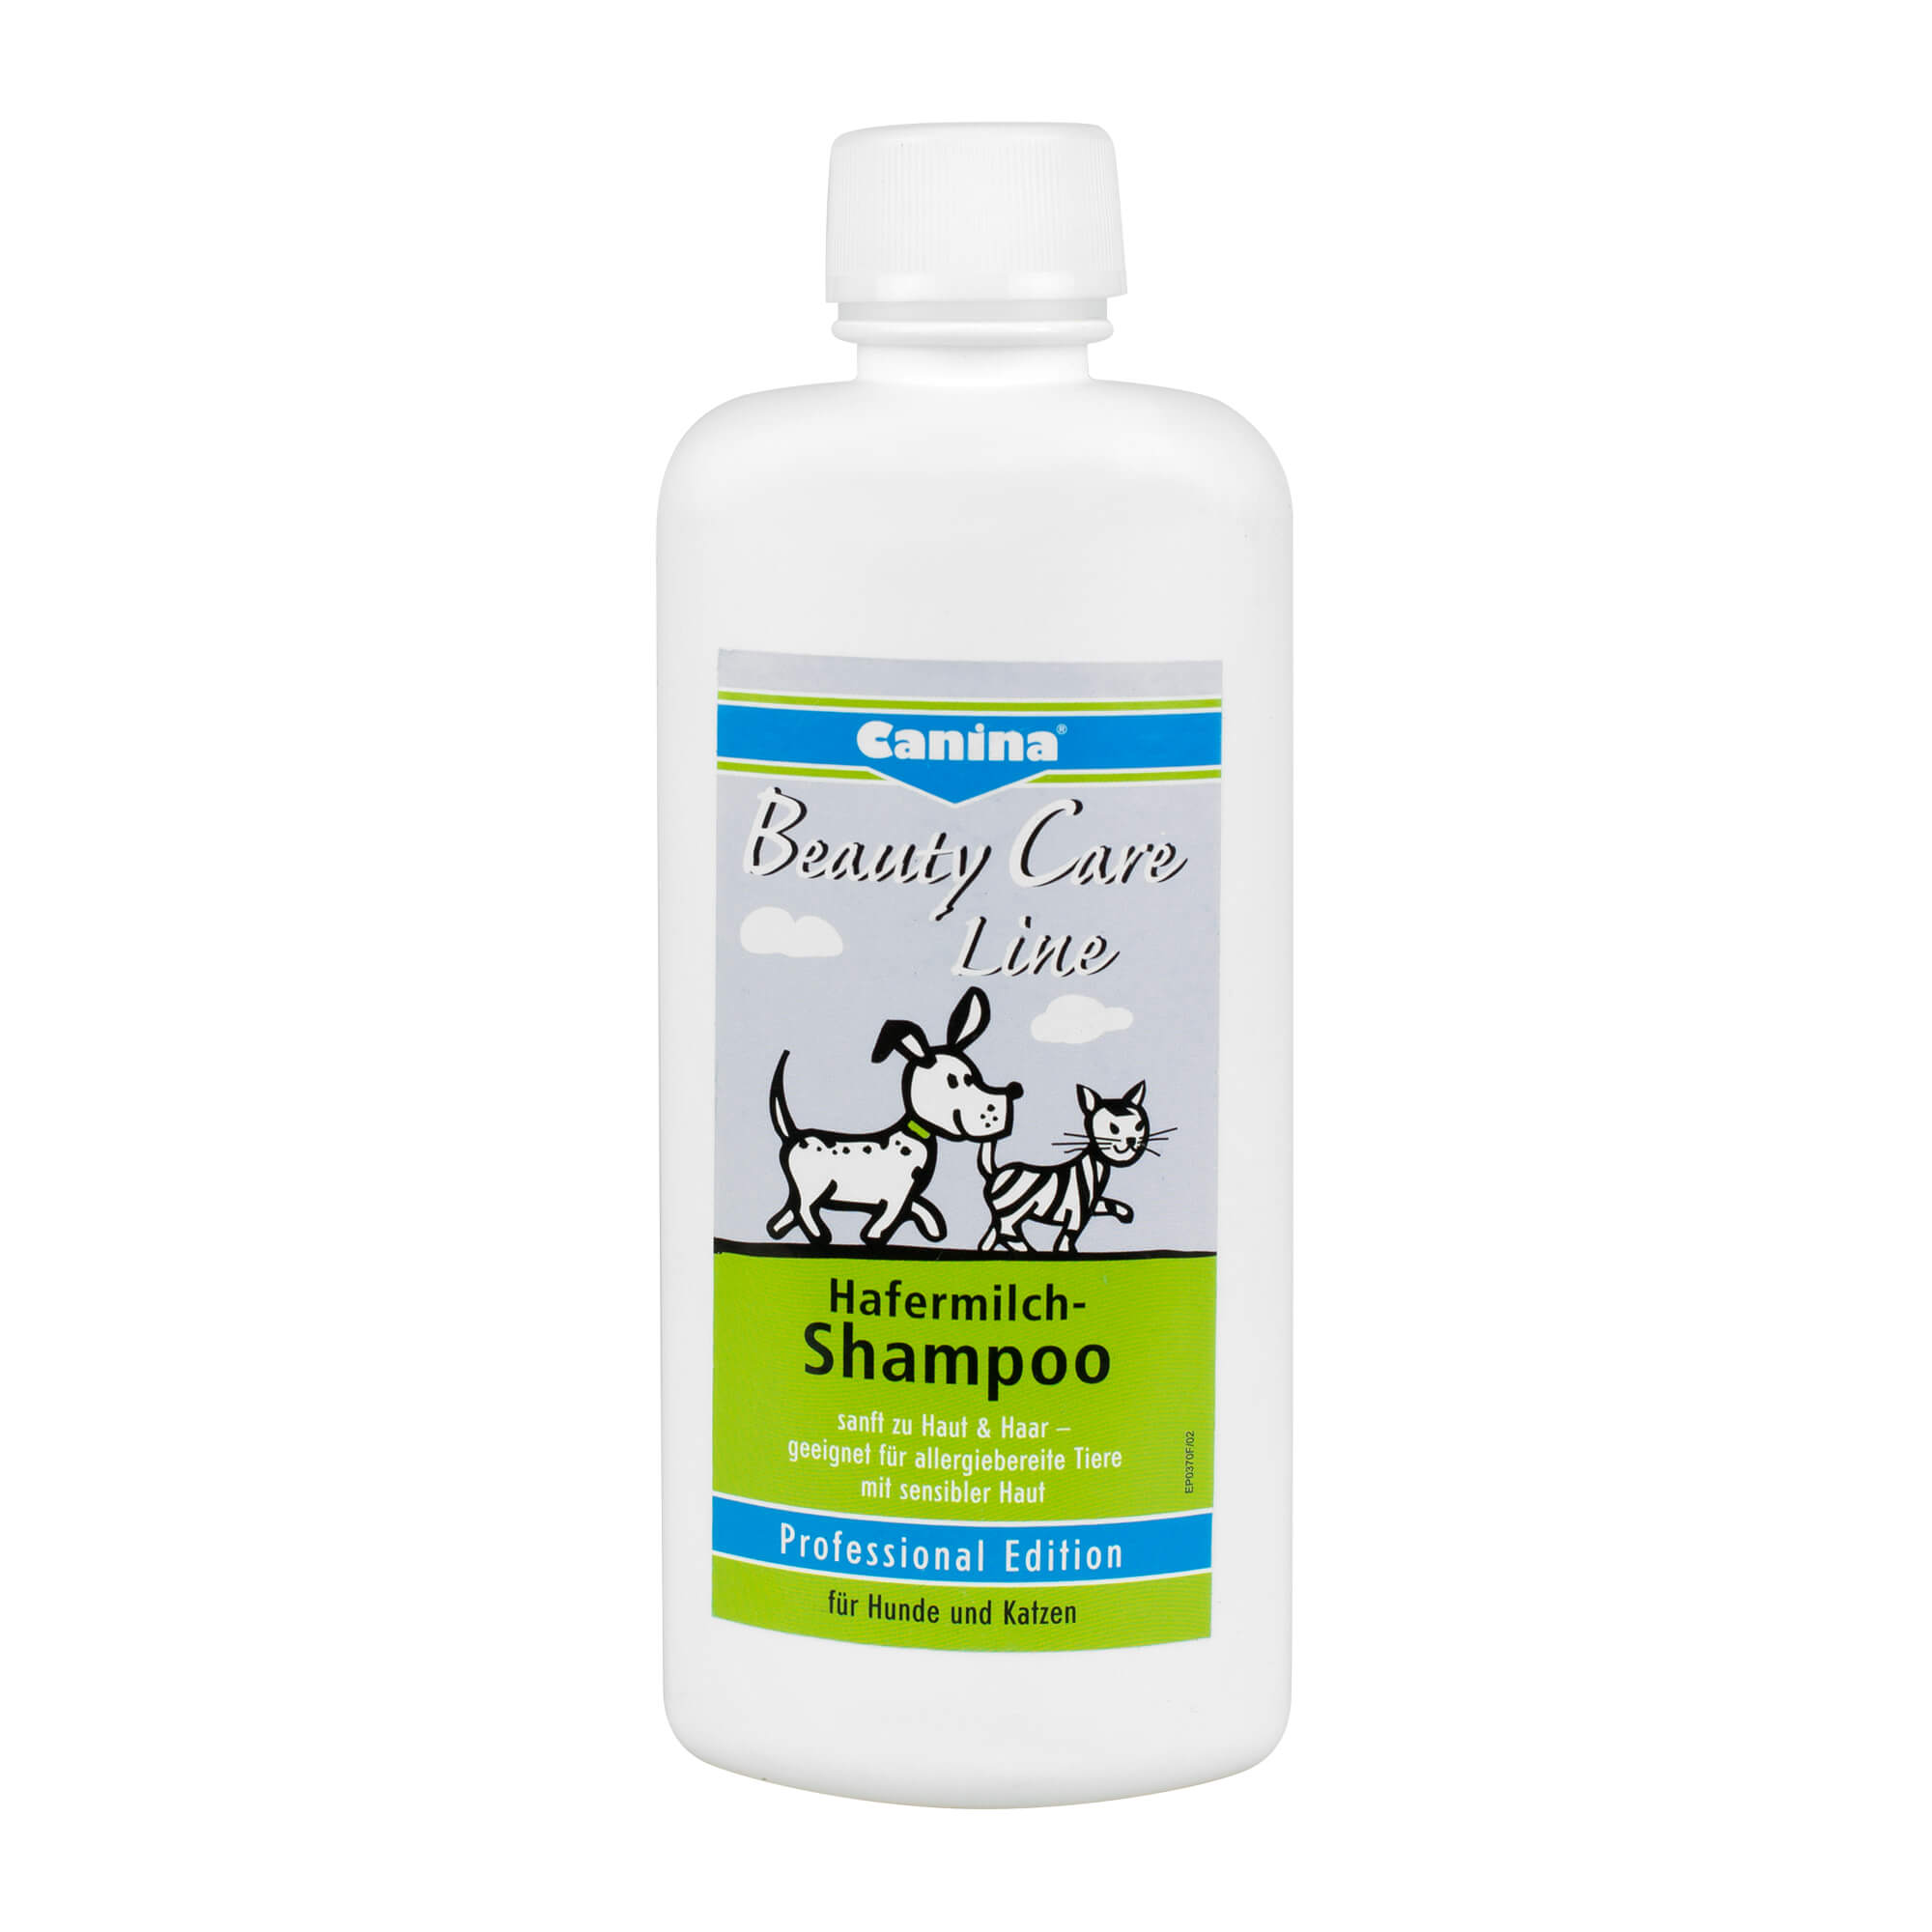 Sanft zu Haut & Haar - geeignet für allergiebereite Tiere mit sensibler Haut, für Hunde und Katzen.